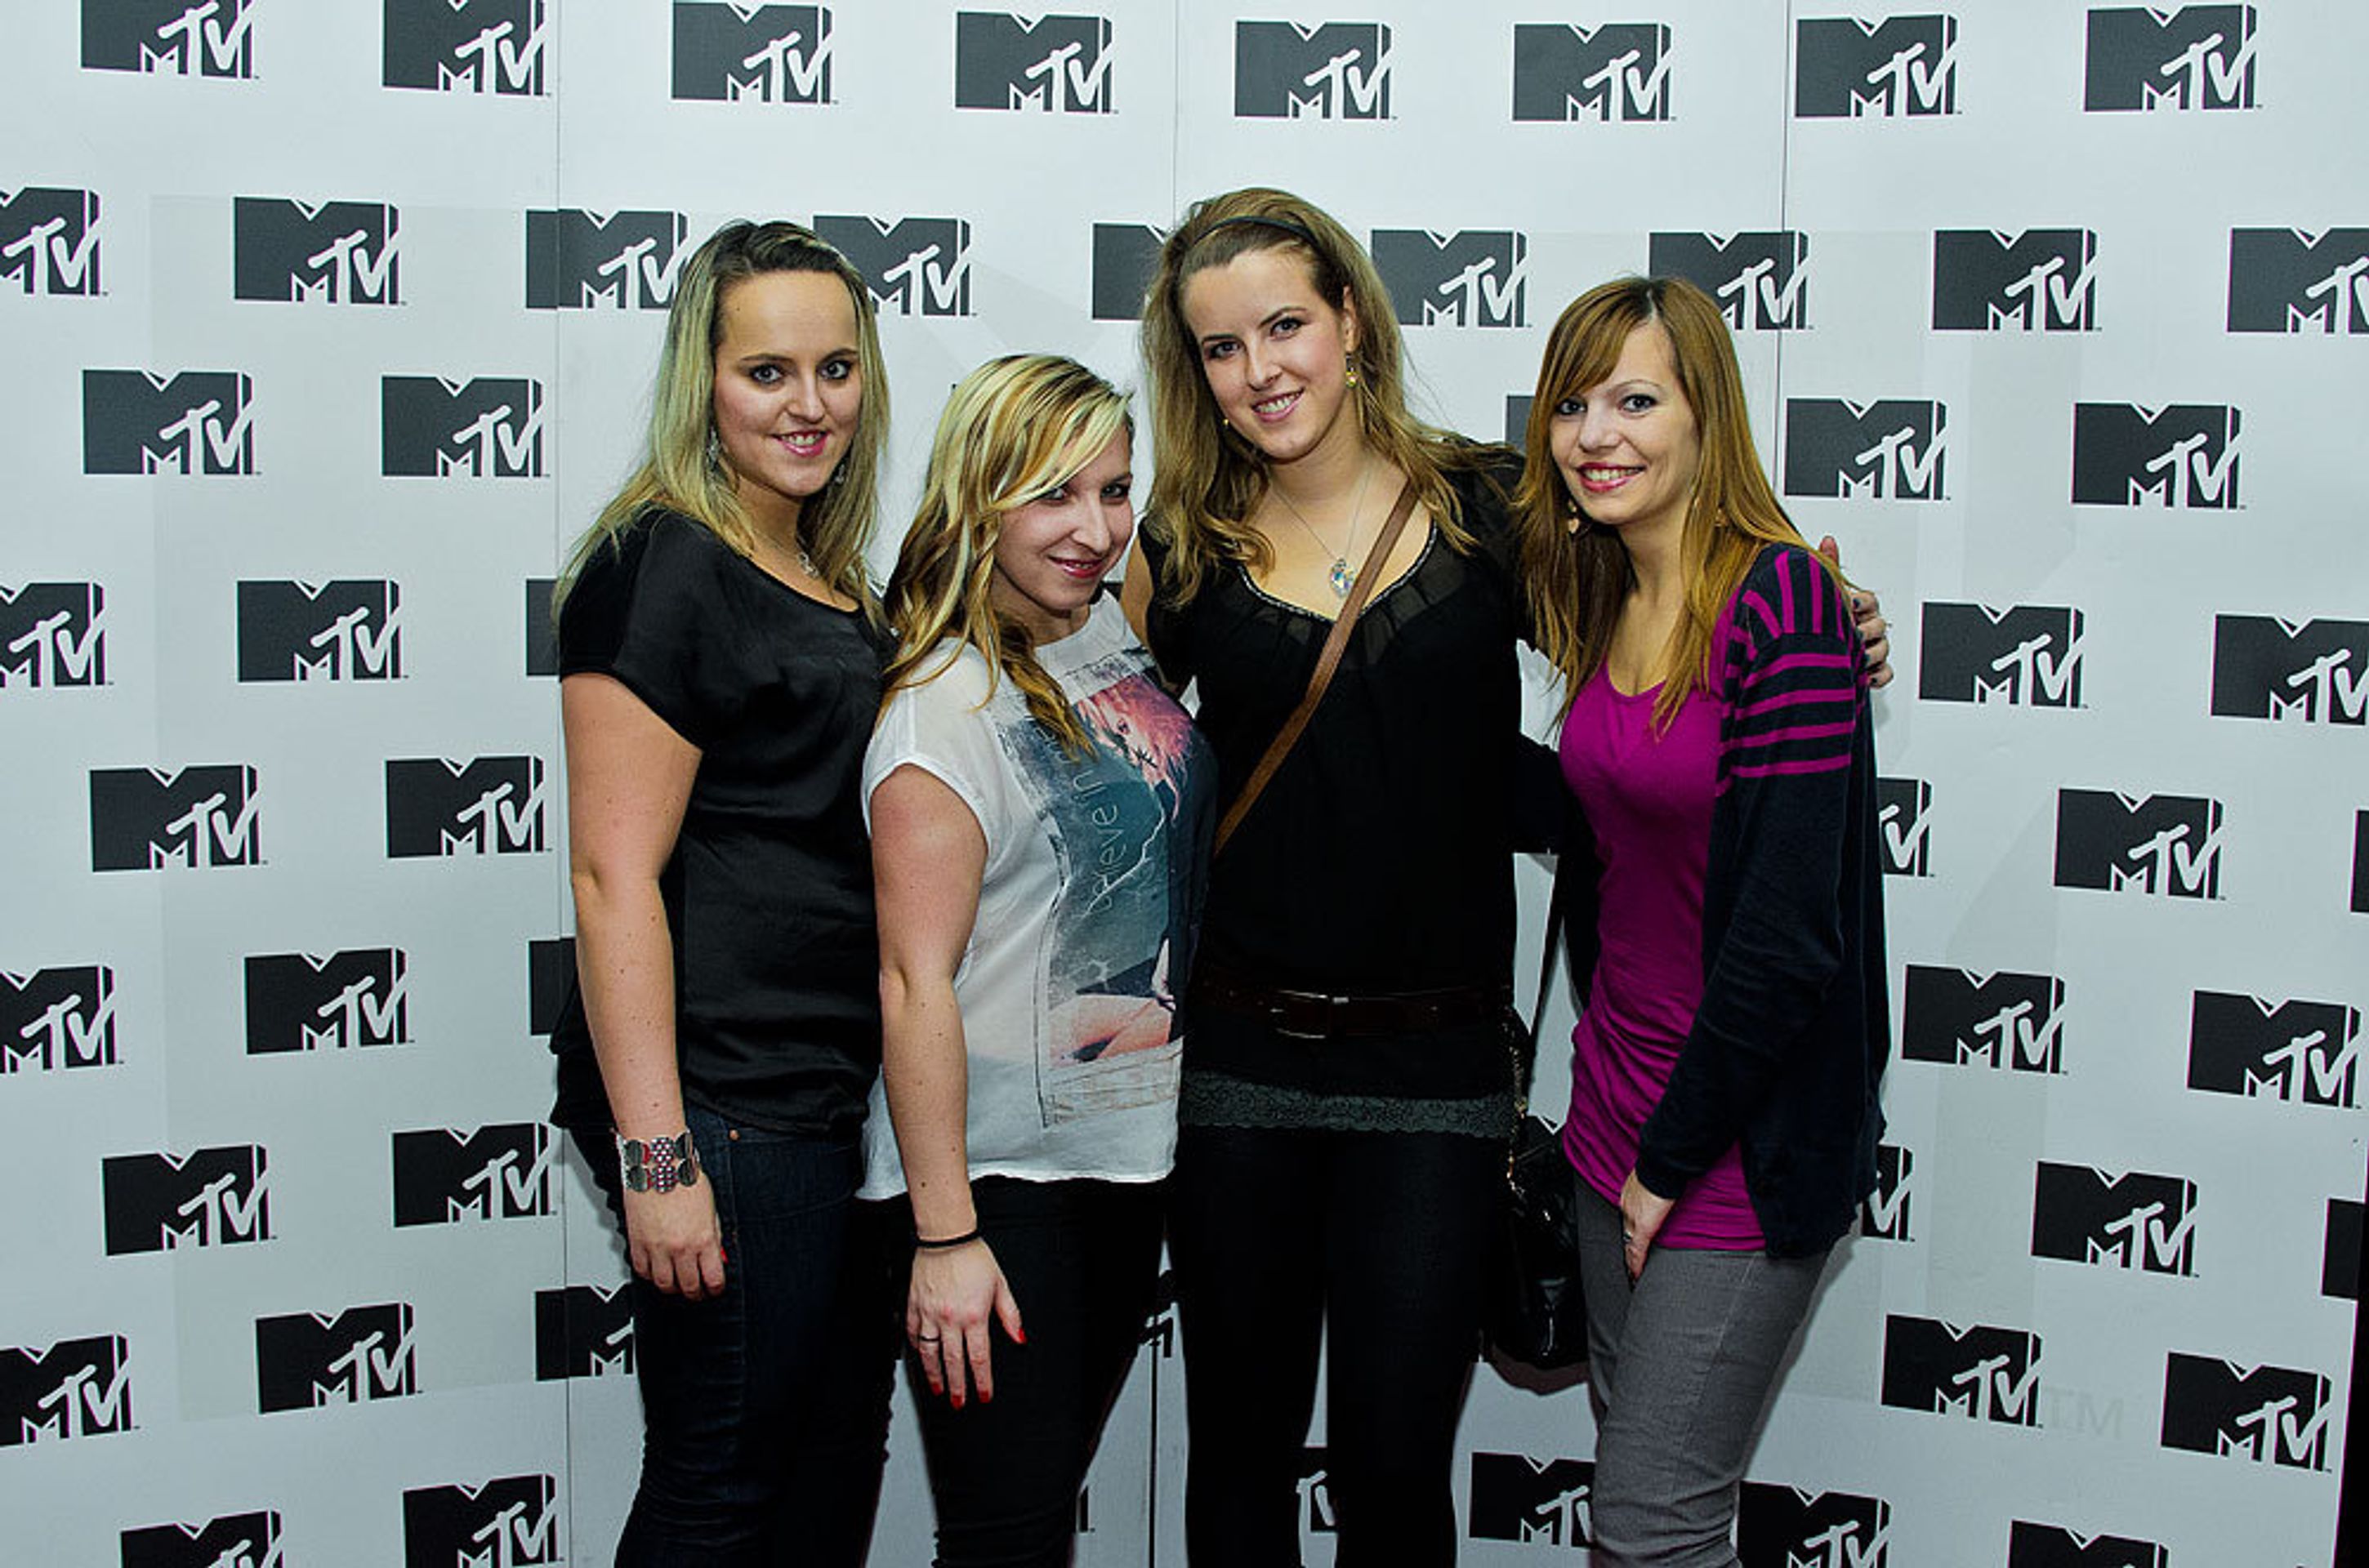 MTV - 2 - MTV oslavila třetí narozeniny (9/10)